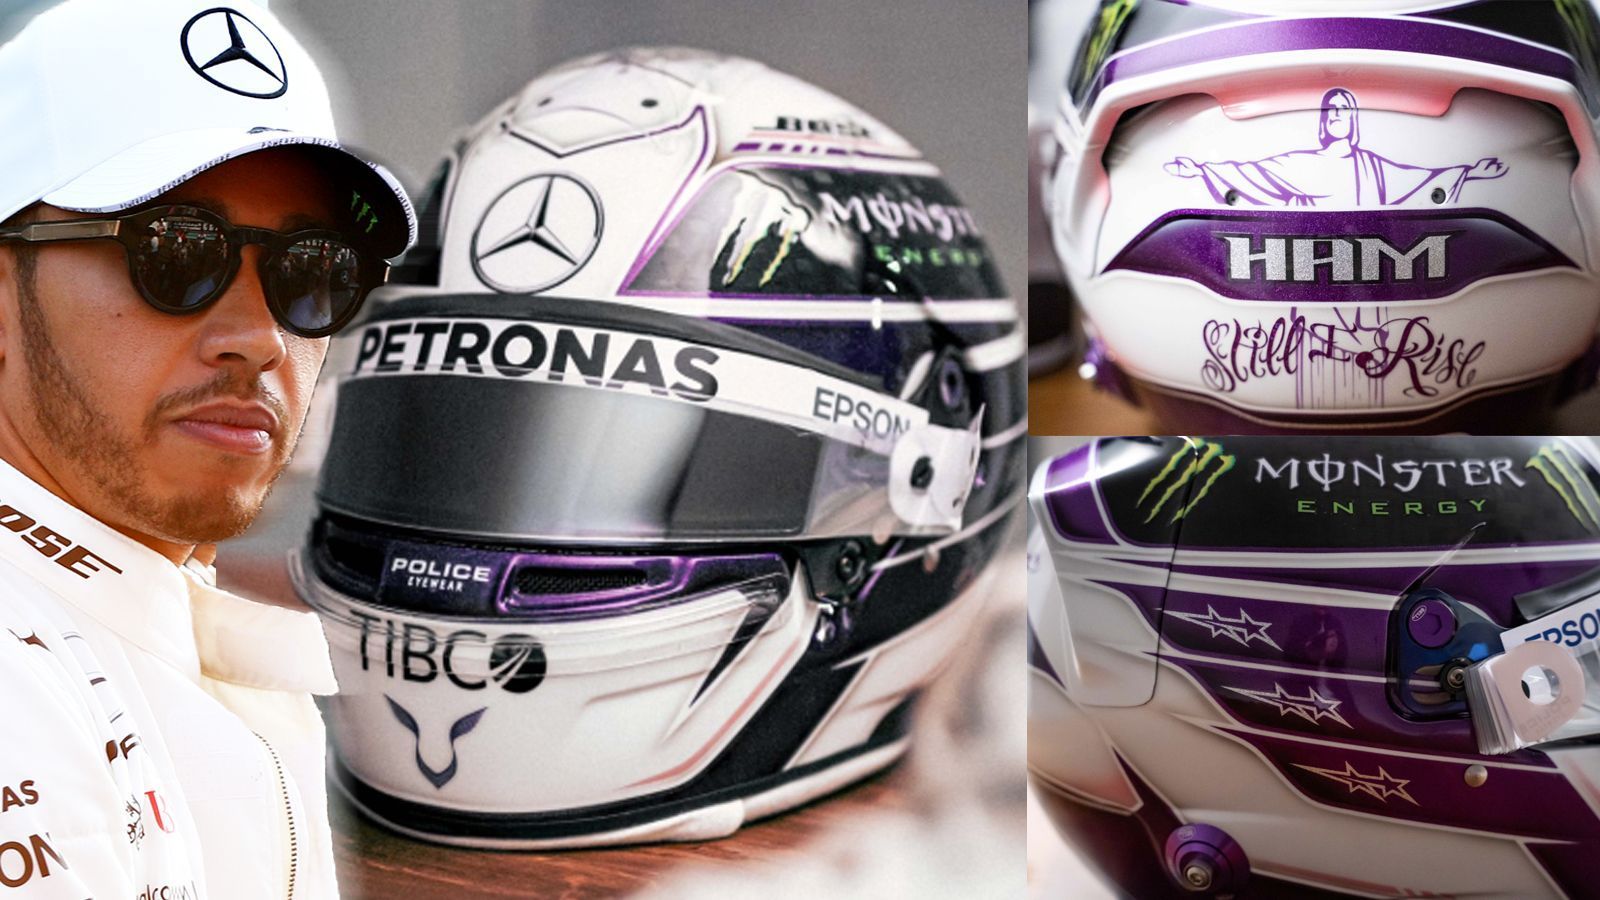 
                <strong>Lewis Hamilton (Mercedes-AMG F1)</strong><br>
                "Purple Dove", "Purple Rain" - mit diesen Worten präsentieren Lewis Hamilton und Mercedes-AMG den neuen Helm des Weltmeisters. Auf der Rückseite ist der Slogan "Still I Rise" zu lesen. 
              